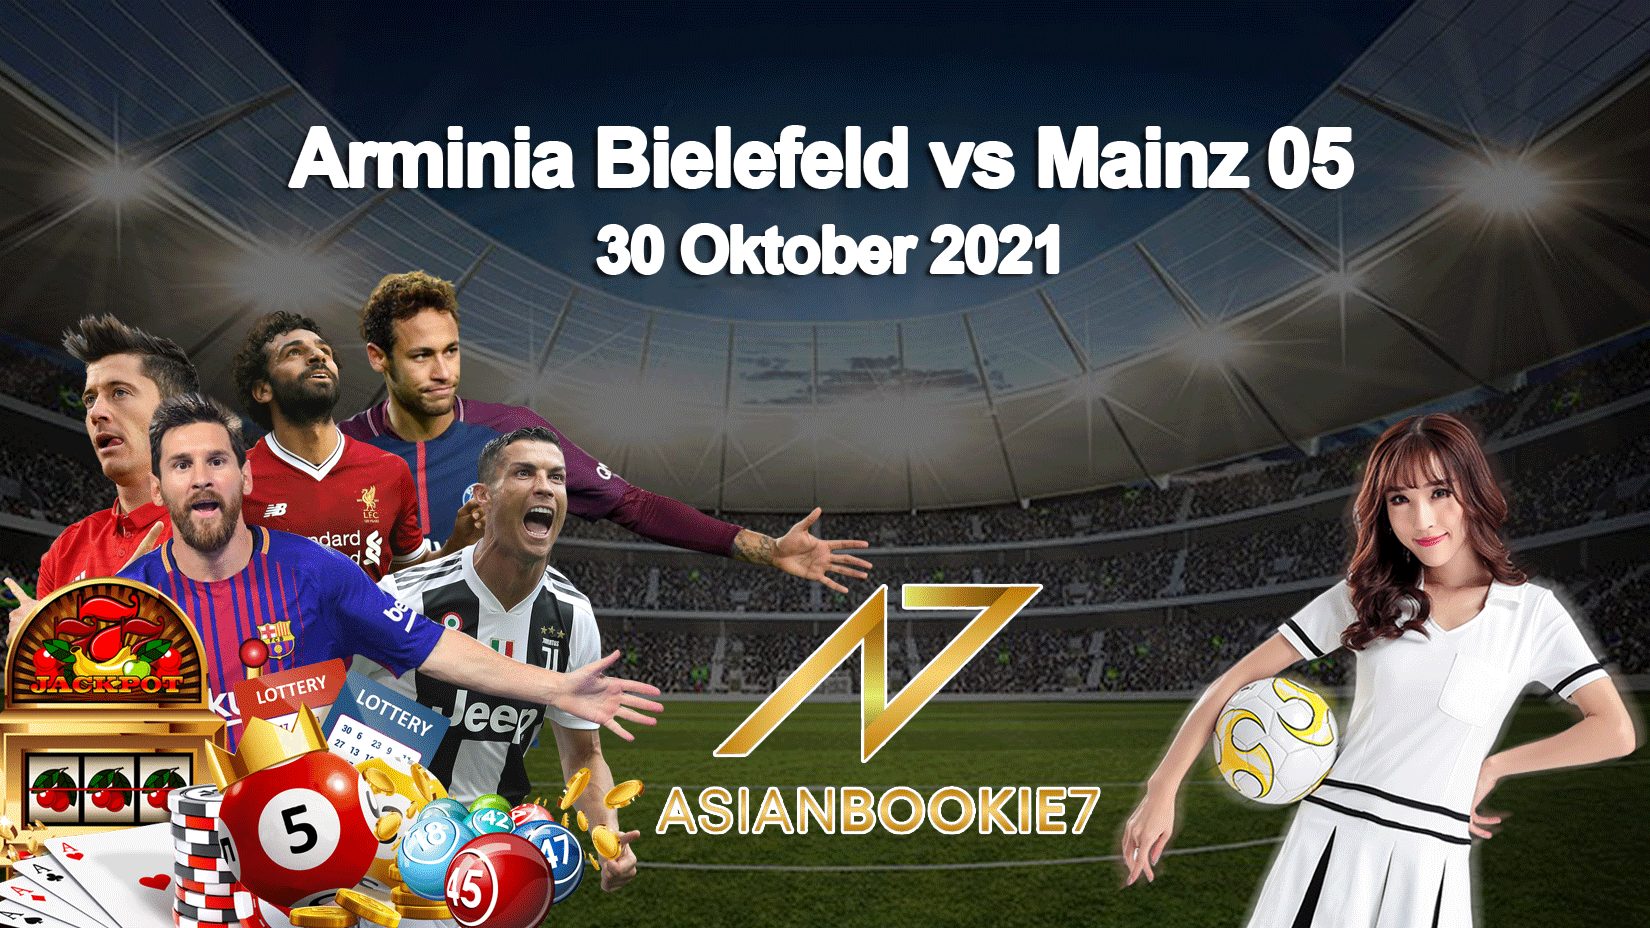 Prediksi Arminia Bielefeld vs Mainz 05 30 Oktober 2021